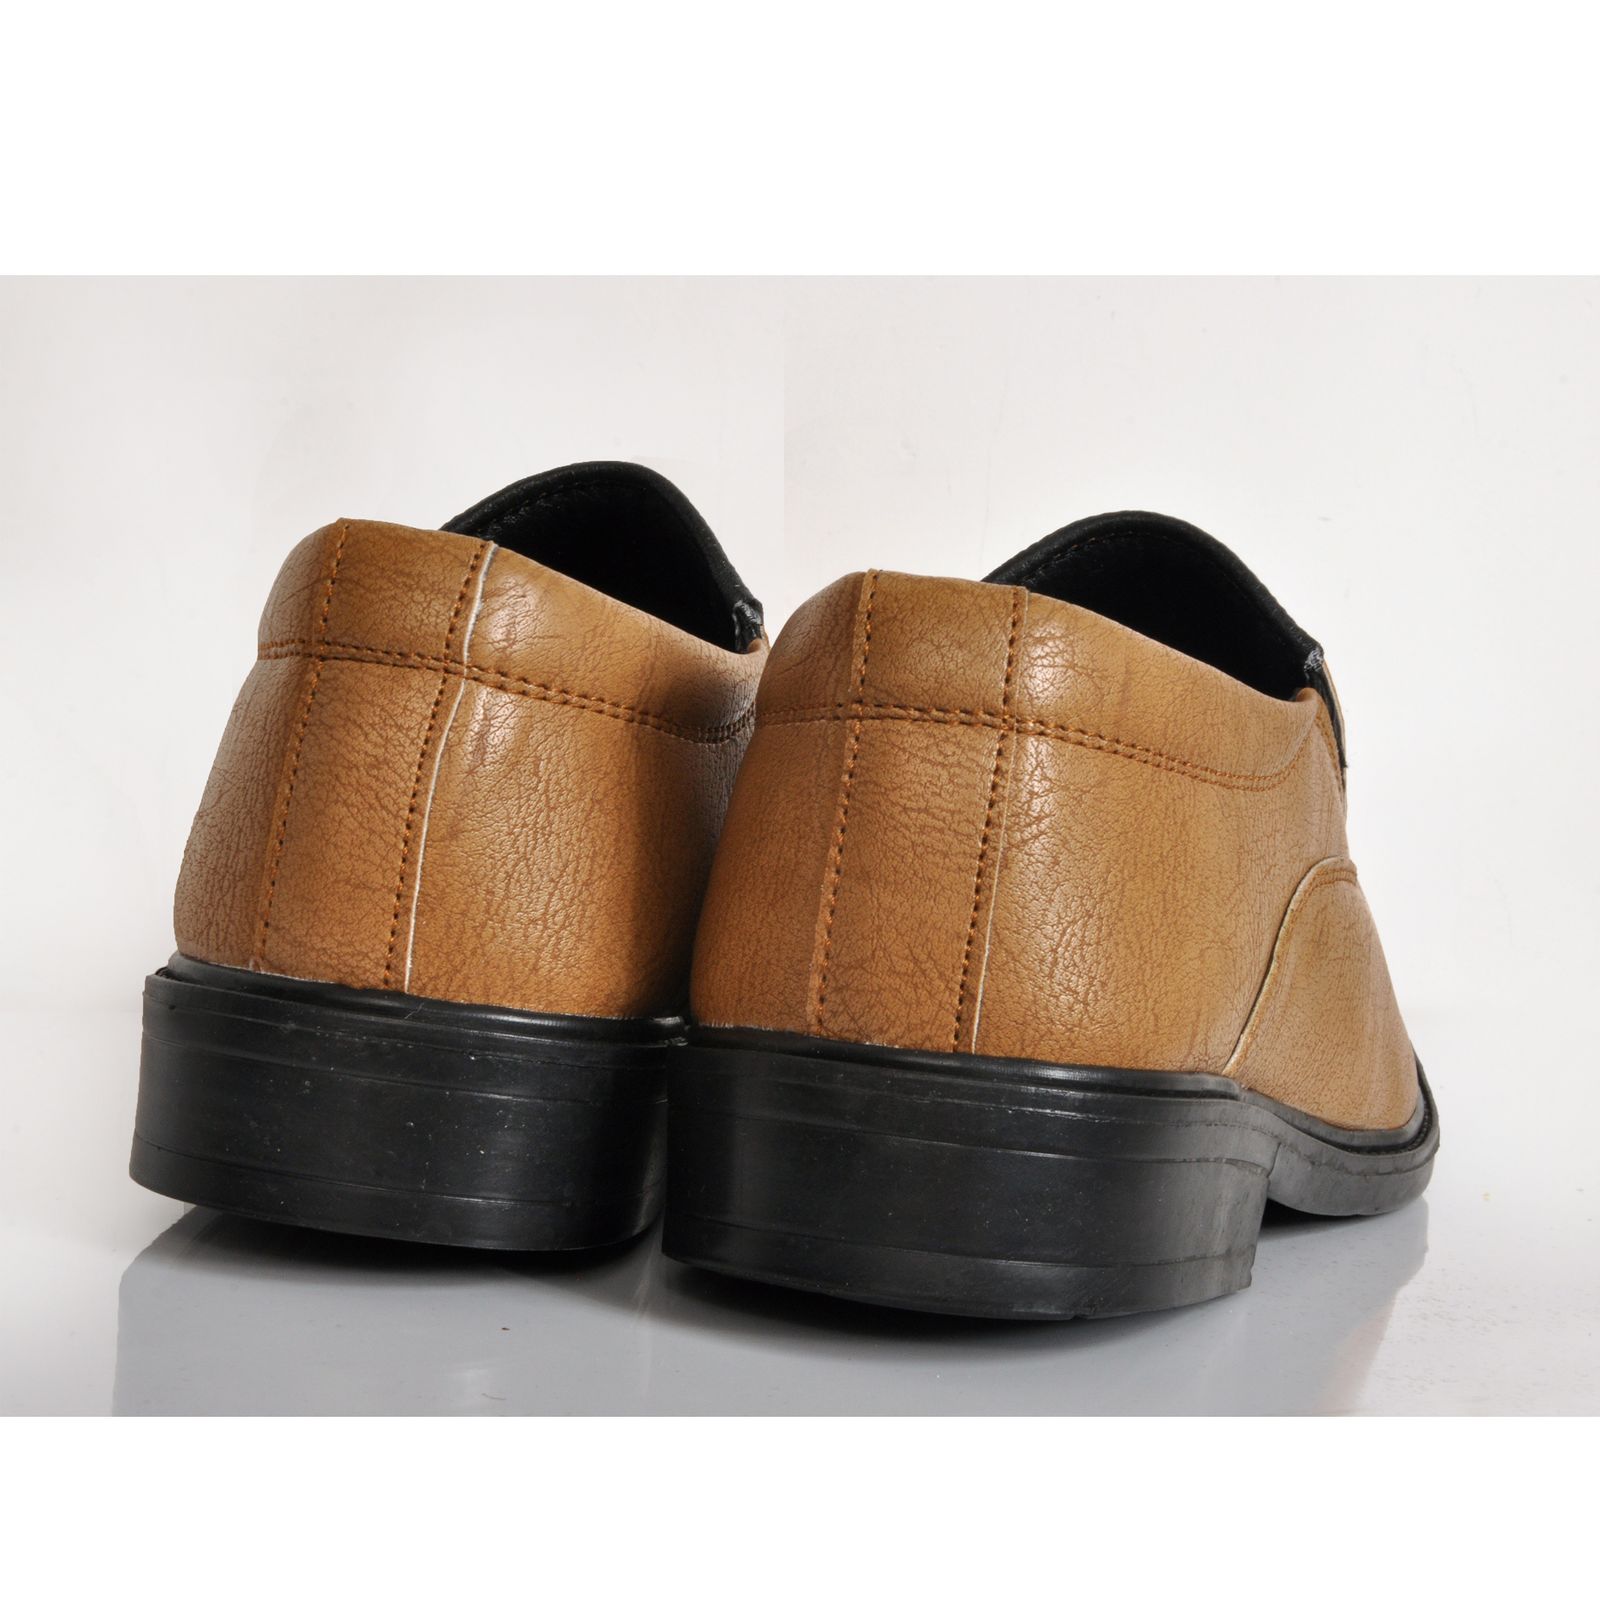 کفش مردانه کروماکی مدل stkm1020 -  - 2